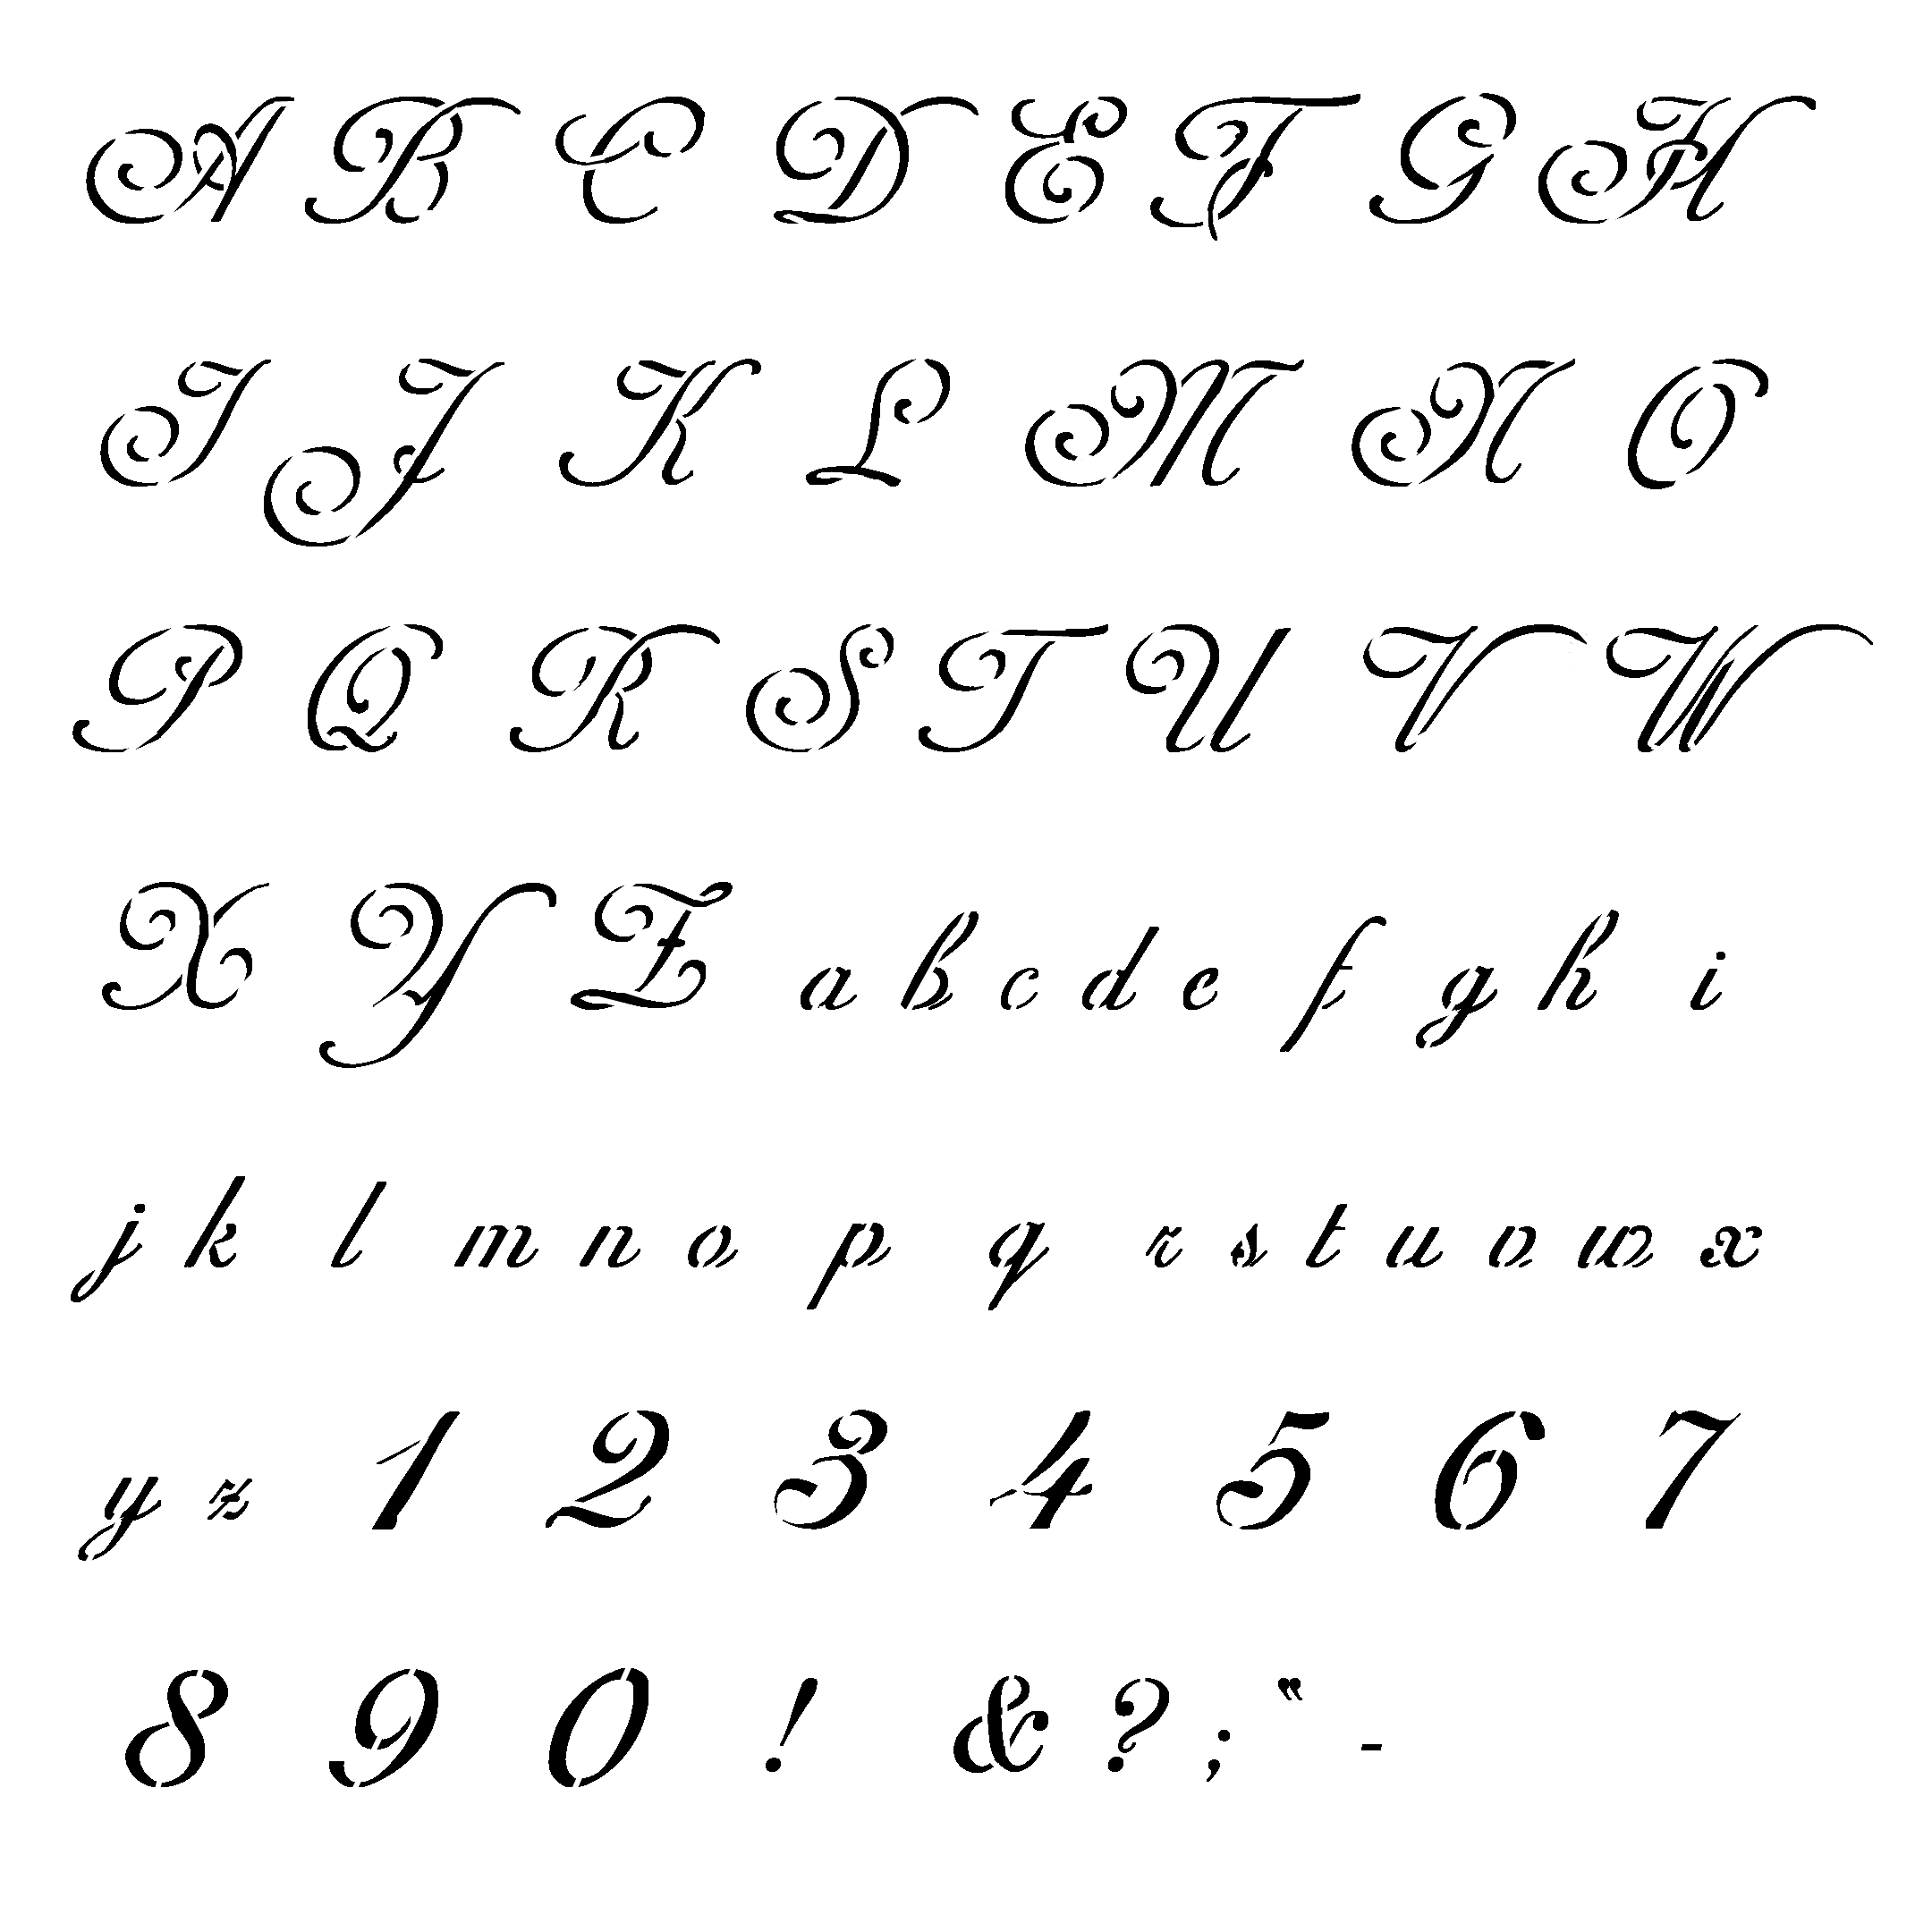 21 Font Alphabet Letter Templates Images - Free Printable Large Within Fancy Alphabet Letter Templates